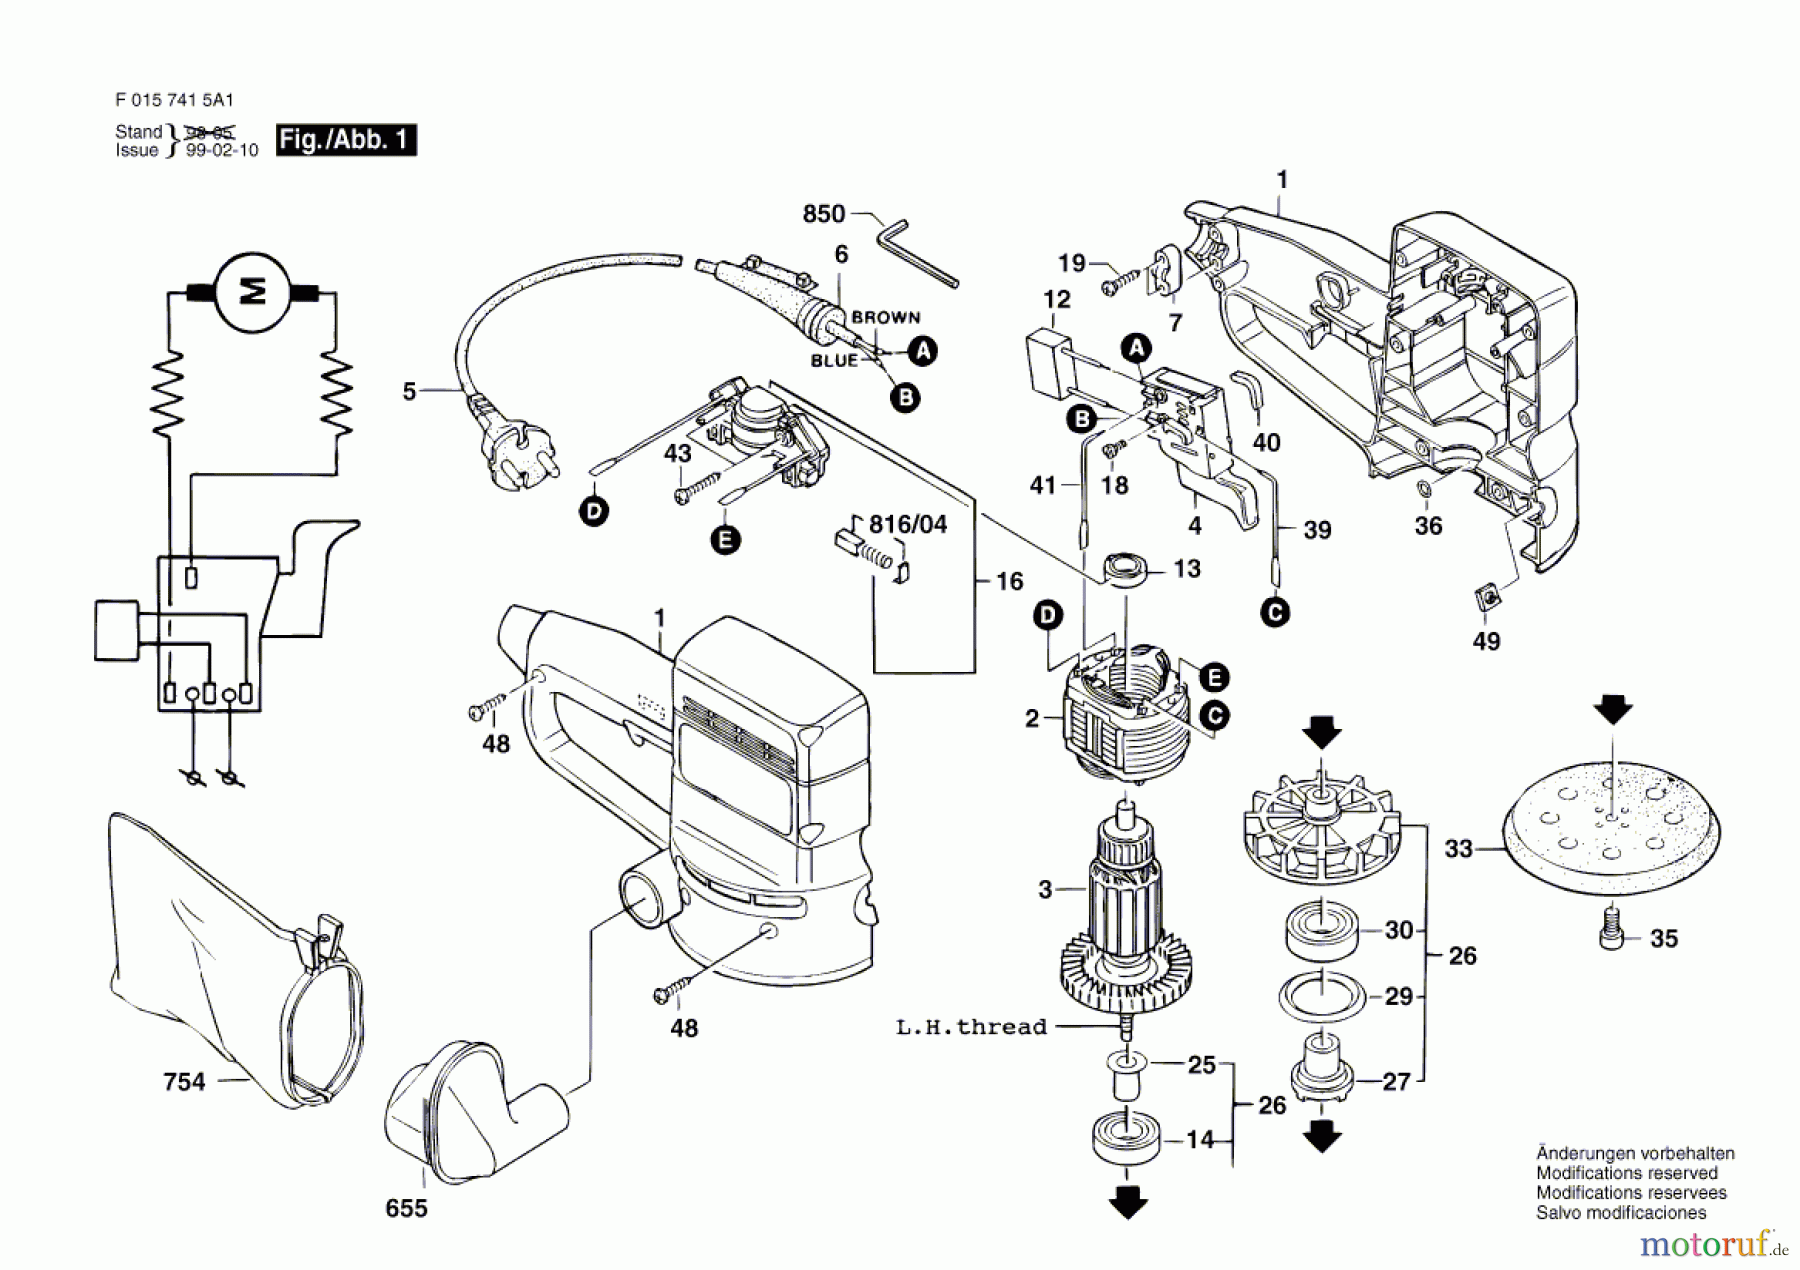  Bosch Werkzeug Exzenterschleifer 7415 H1 Seite 1